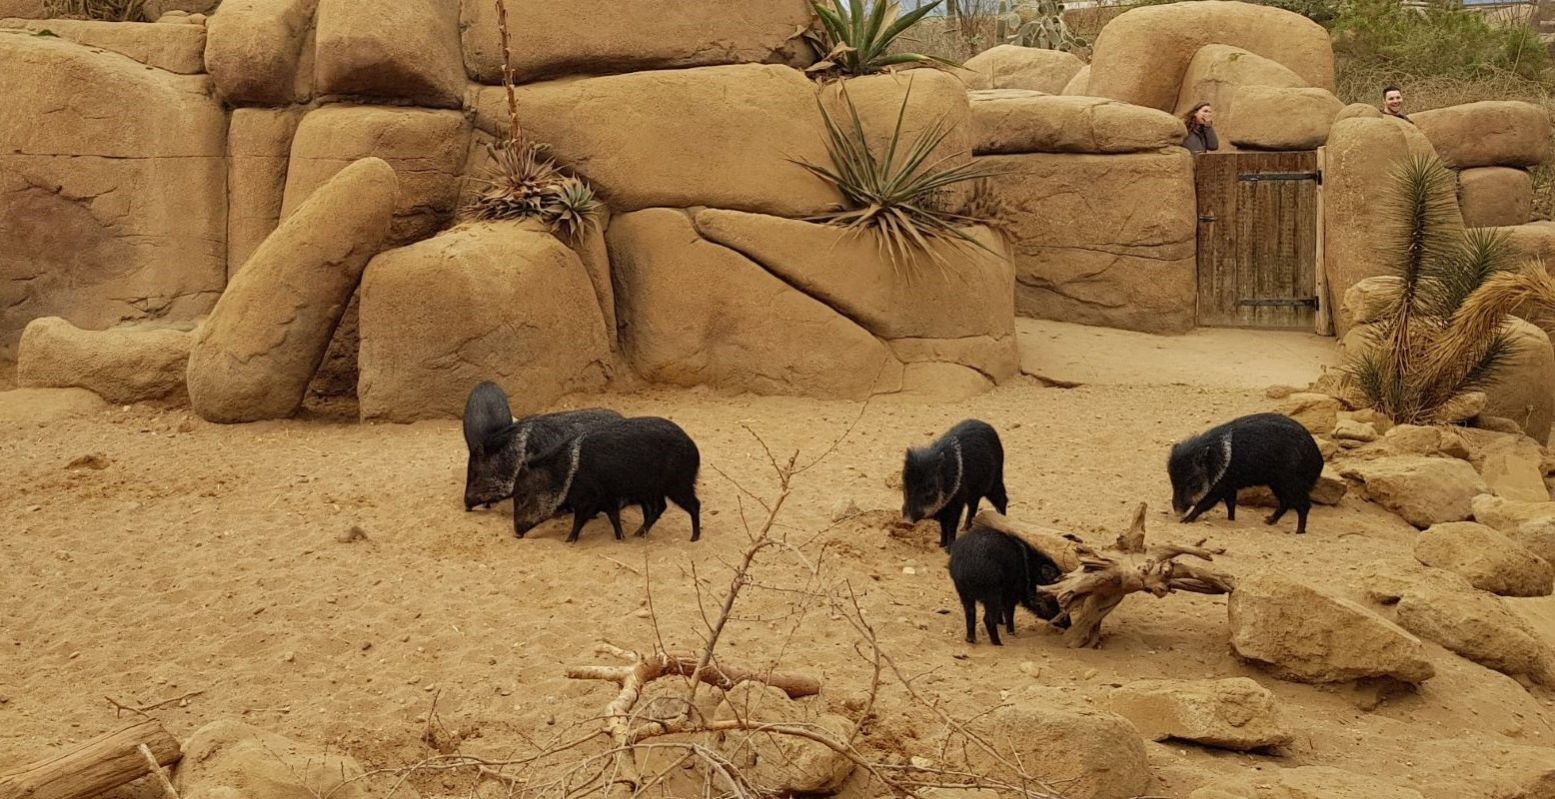 Ontdek bij Burgers' Zoo ook de wondere wereld van de woestijn. Foto: DagjeWeg.NL